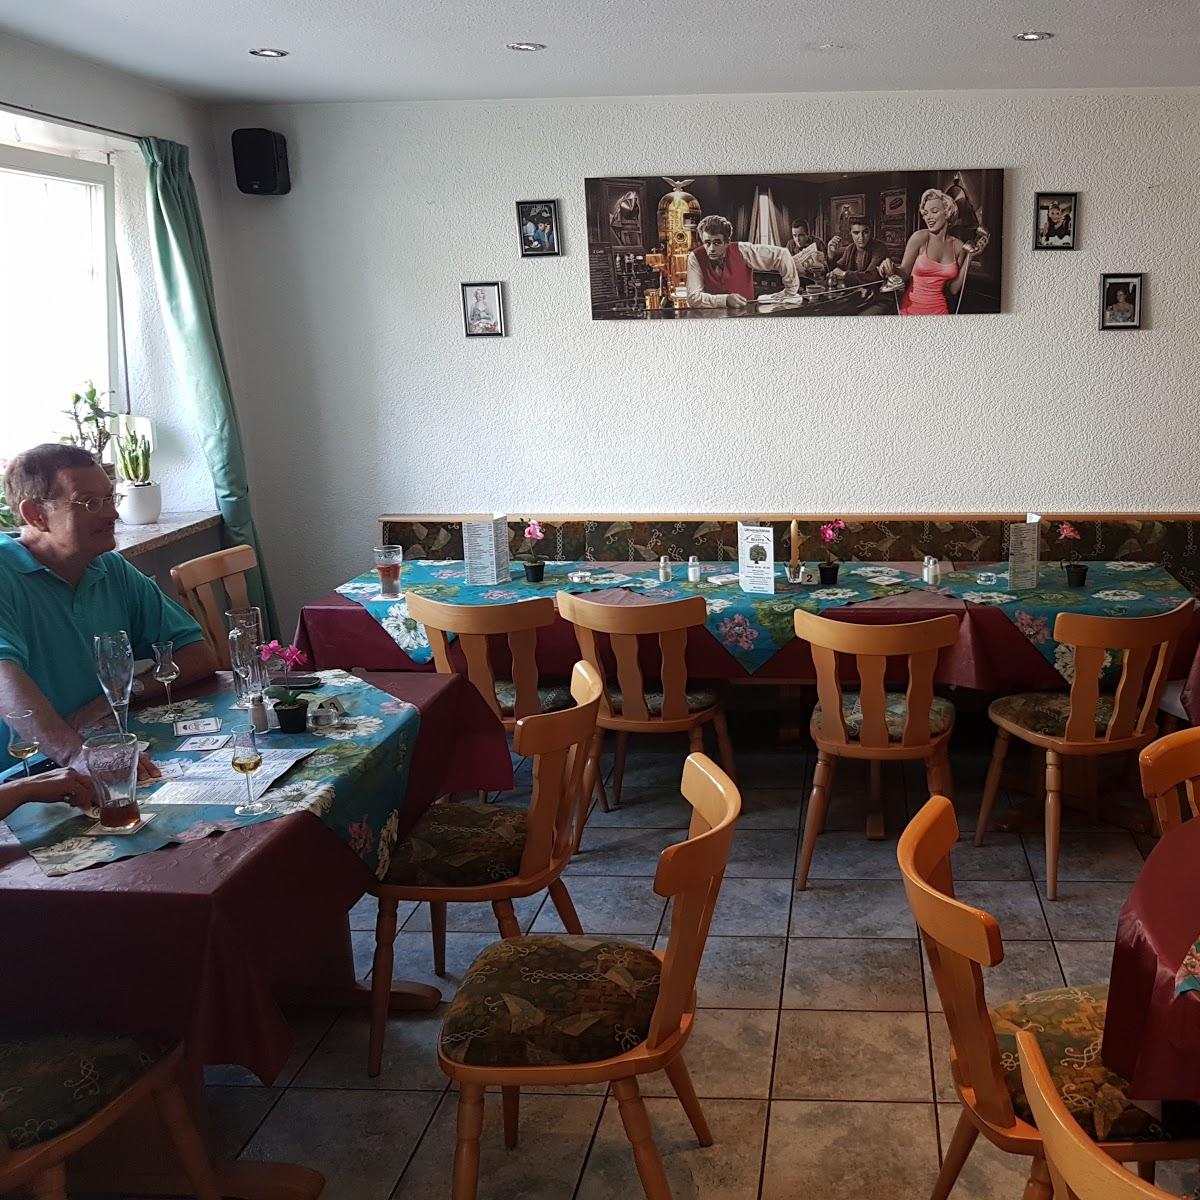 Restaurant "Pizzeria La Strada" in Ober-Olm